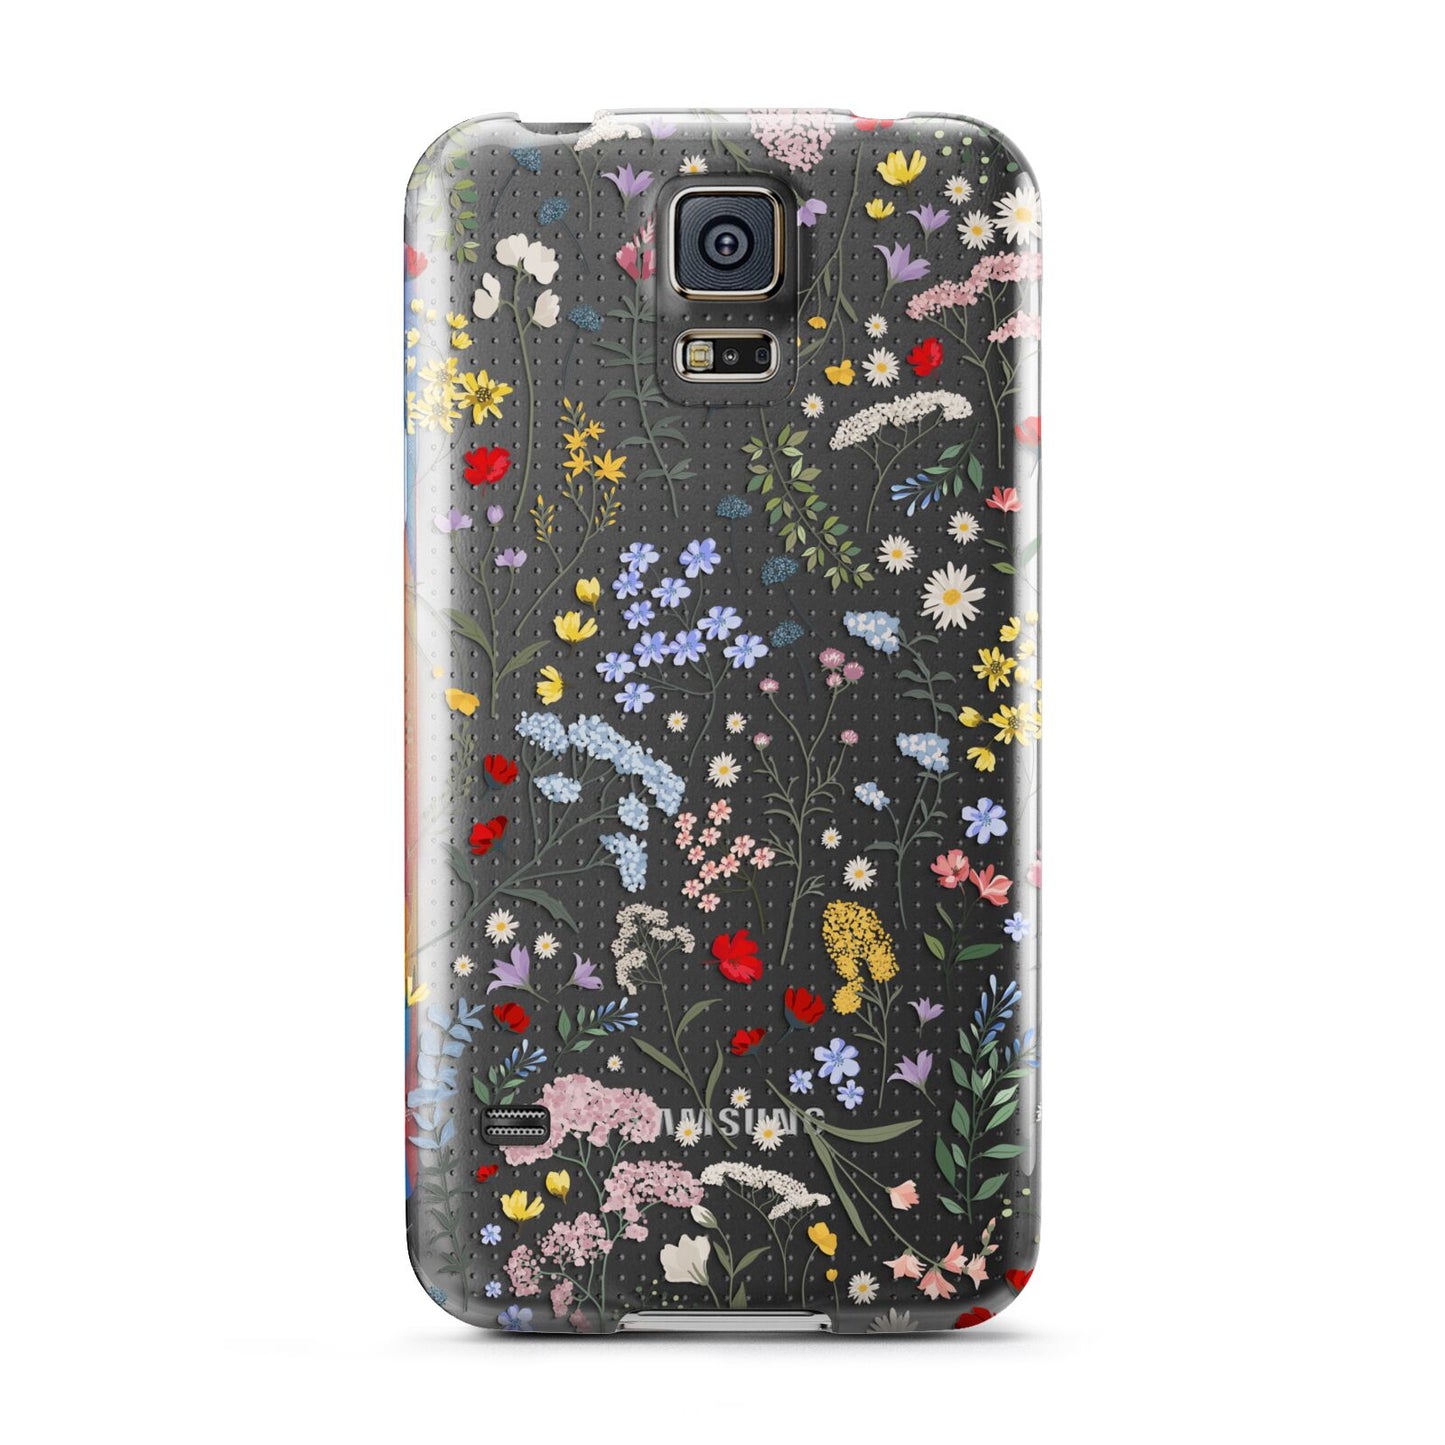 Wild Flowers Samsung Galaxy S5 Case